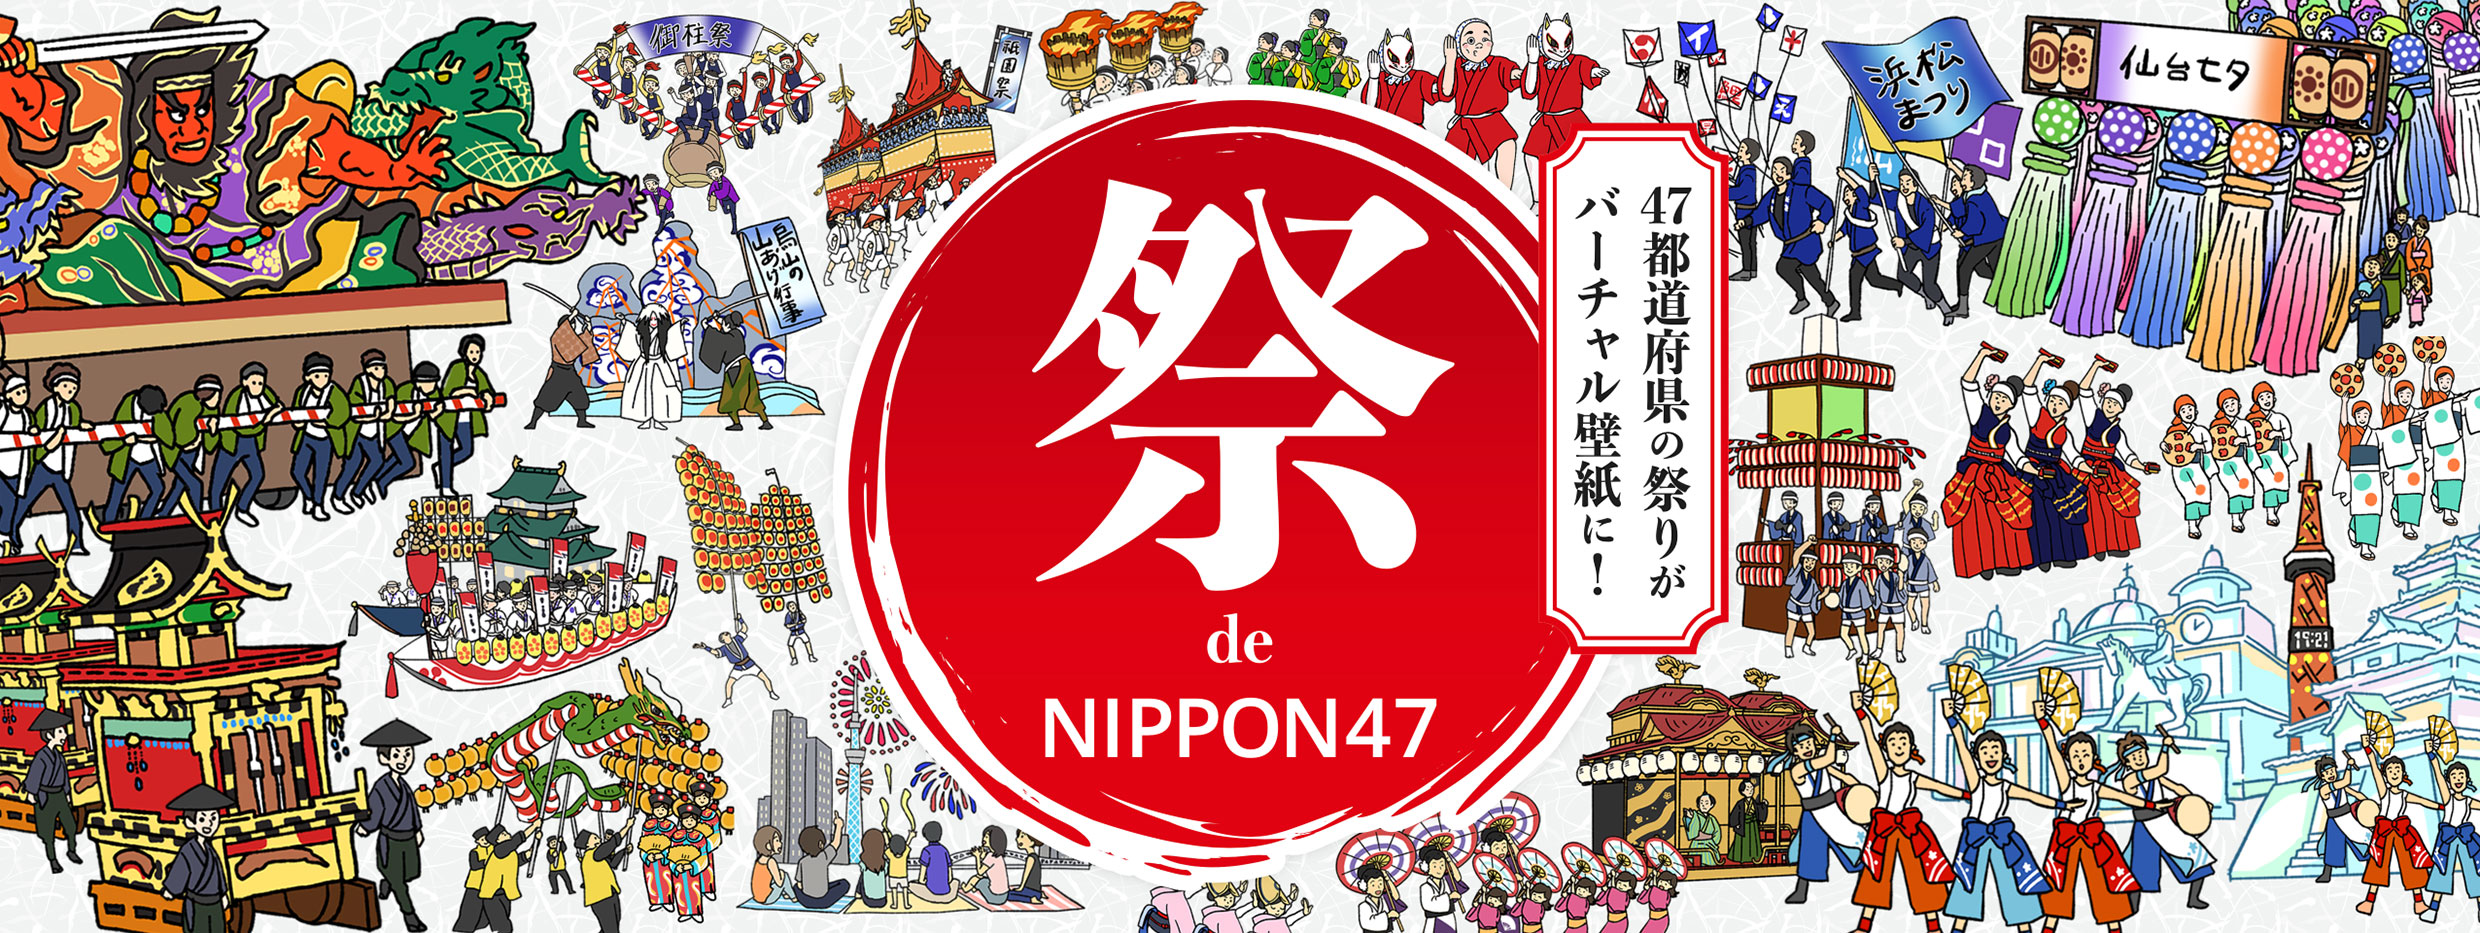 Manga-designed virtual background images of a Japanese festival!